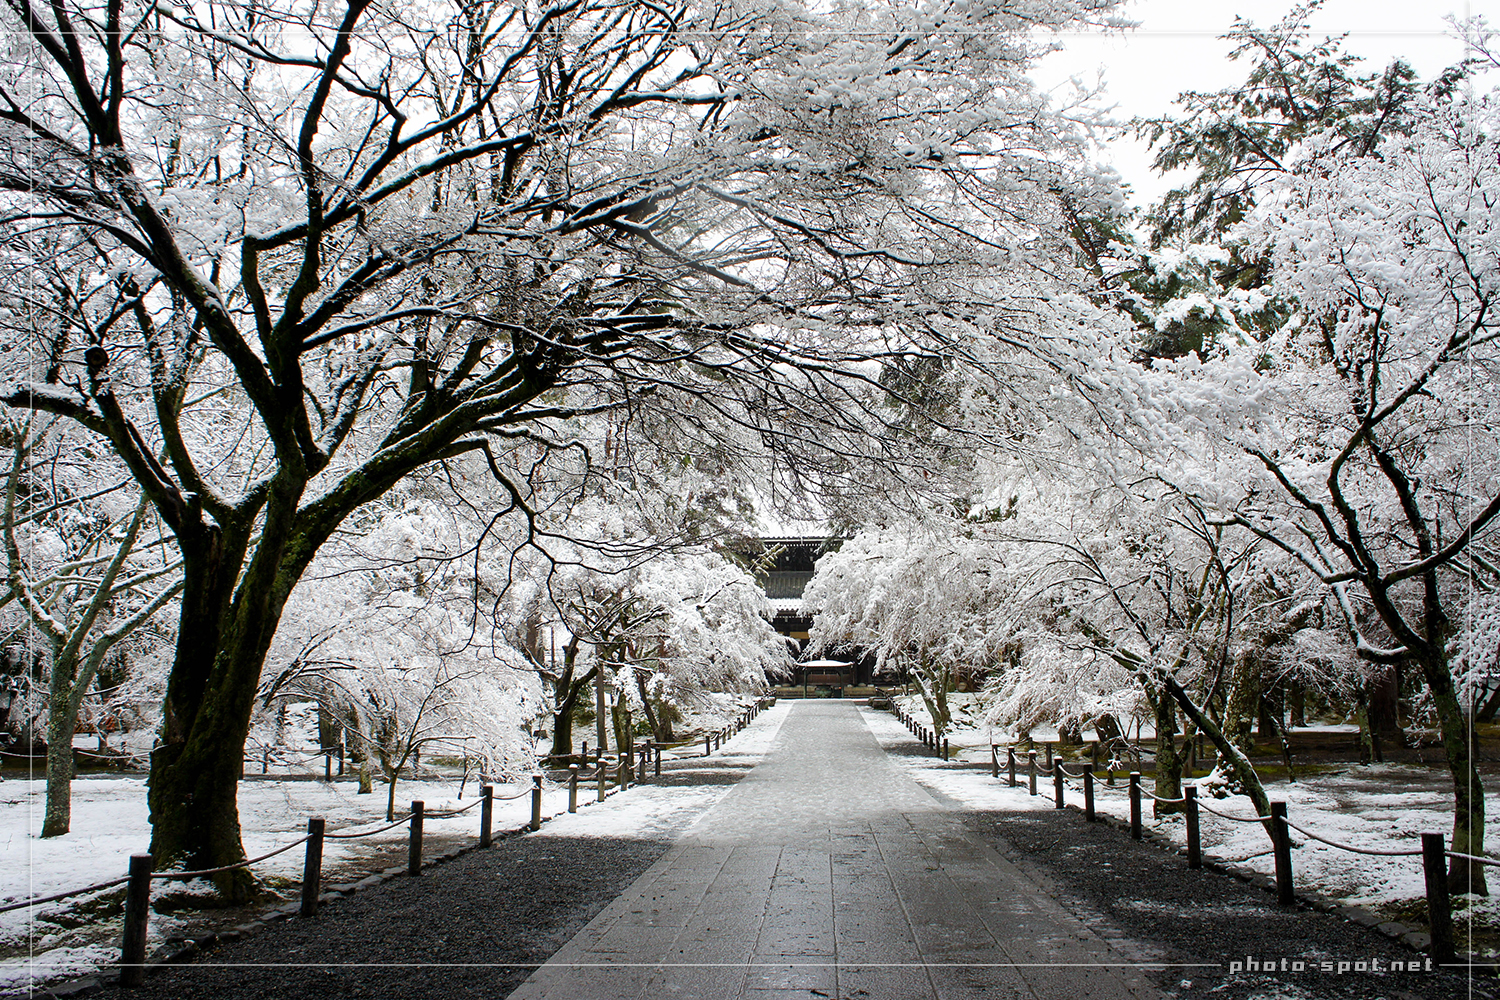 雪化粧の南禅寺 三門の円柱を通り抜け